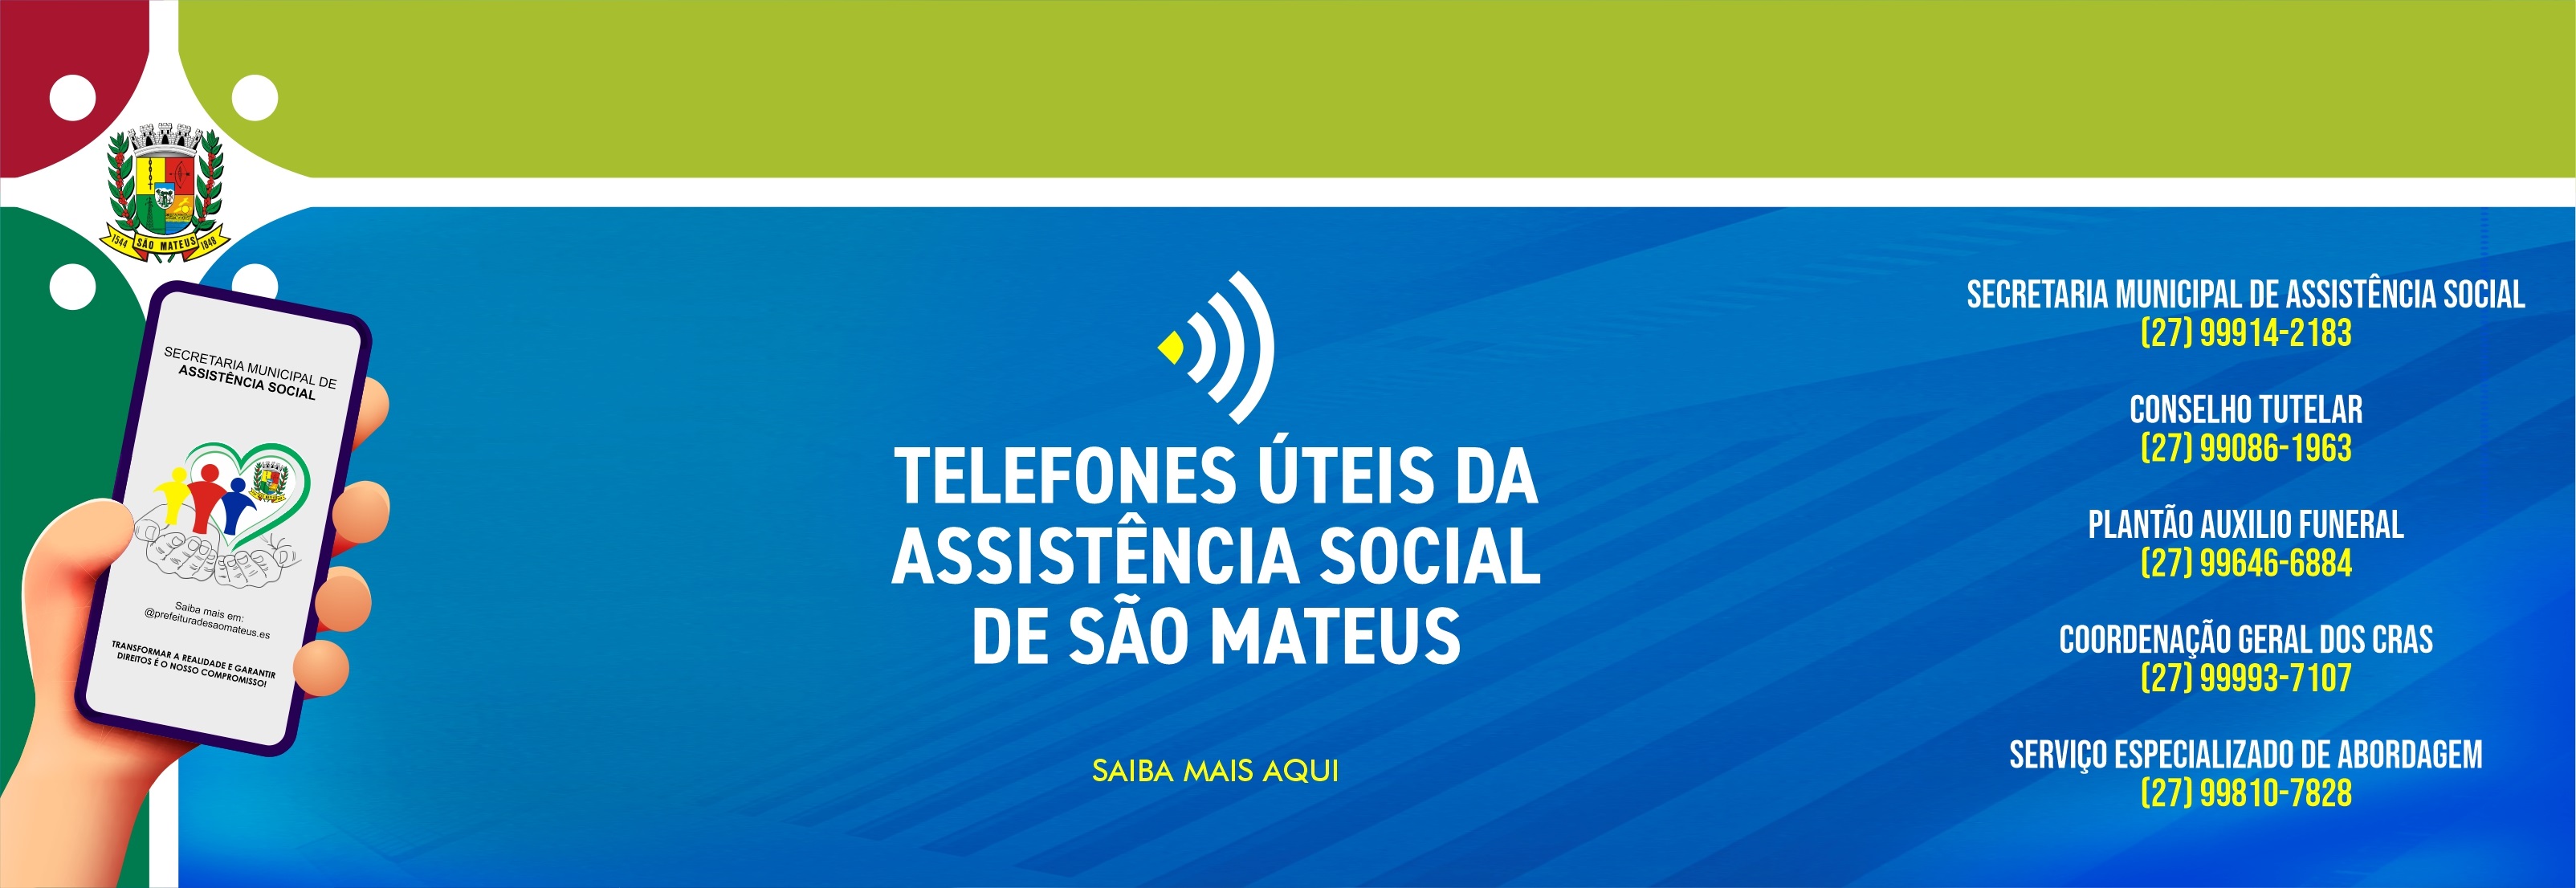 TELEFONES ÚTEIS DA ASSISTÊNCIA SOCIAL DE SÃO MATEUS